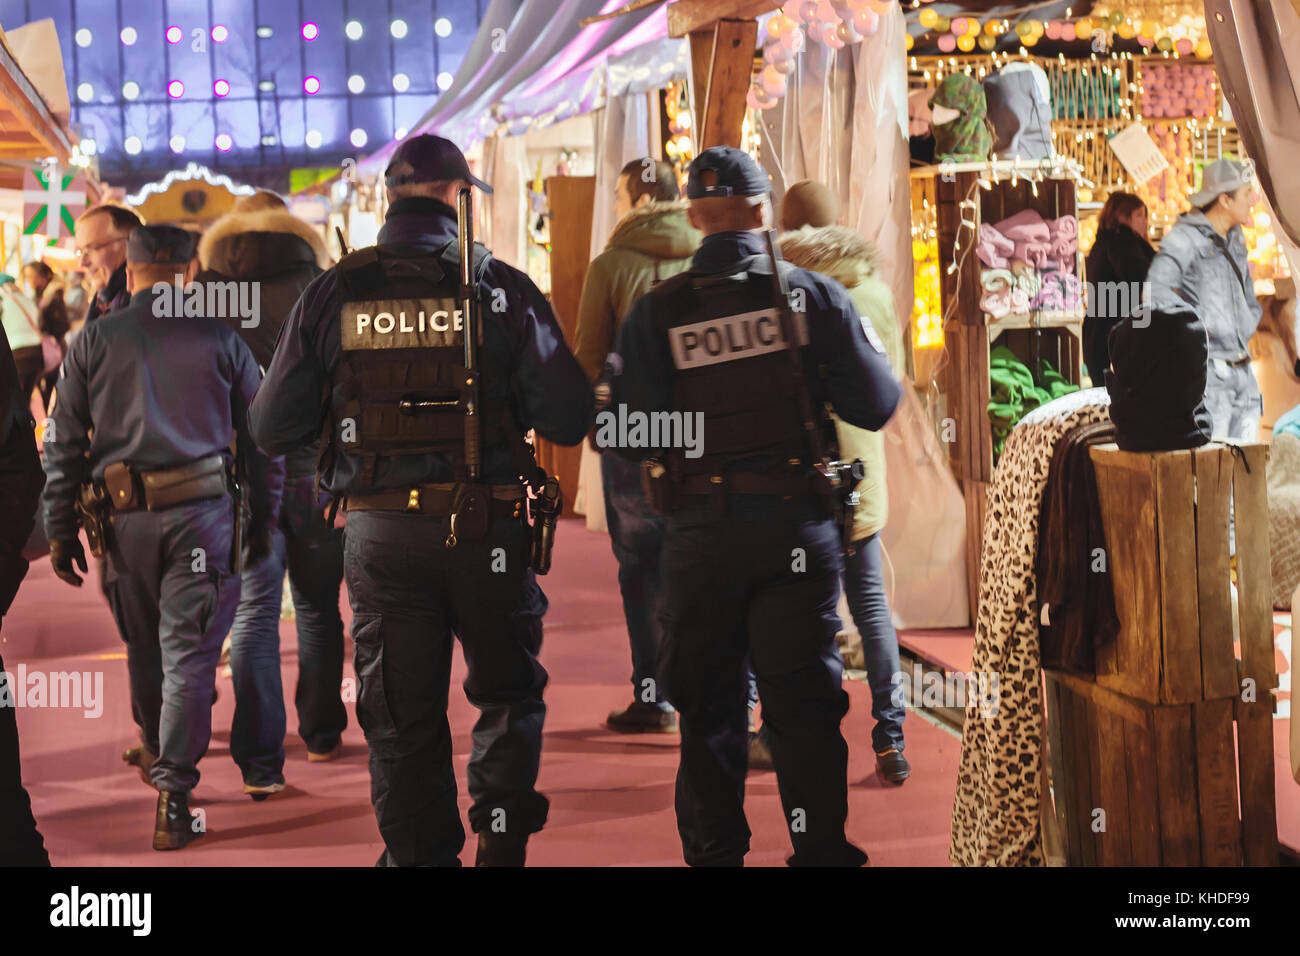 Paris, France - 9 décembre 2013 : des agents de police armés marchant dans la rue, blurred motion Banque D'Images